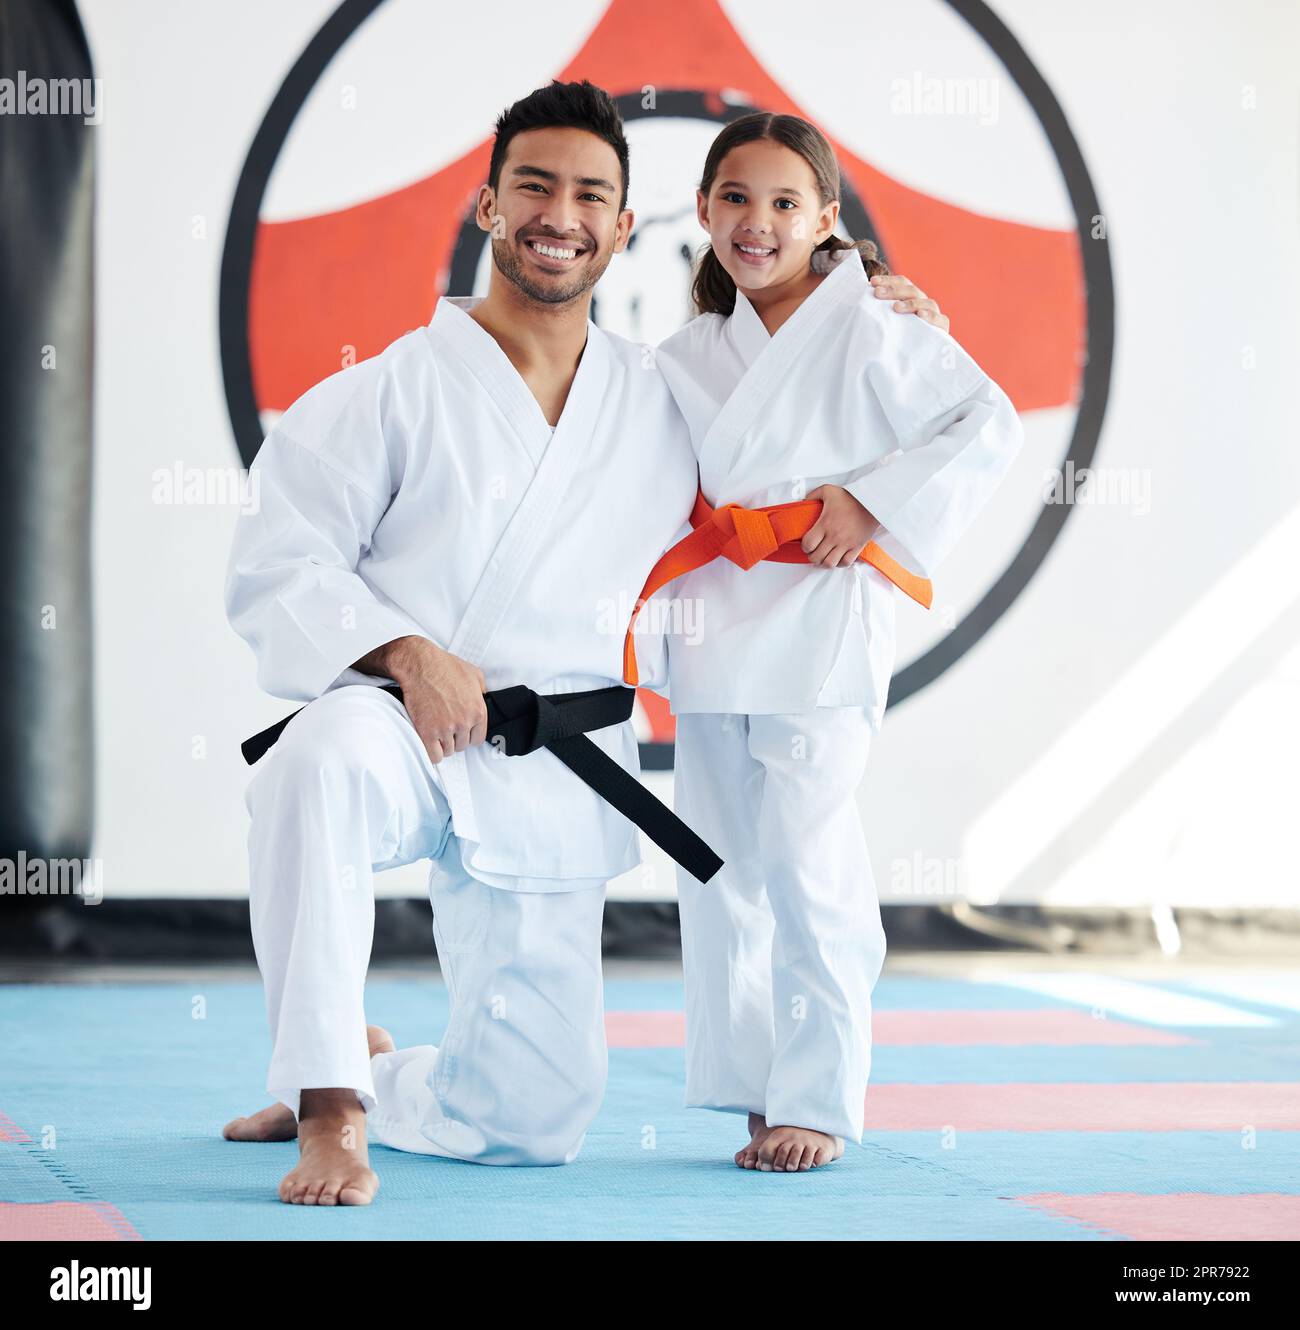 Egal wie klein, immer hoch stehen. Aufnahme eines jungen Mannes und eines niedlichen kleinen Mädchens, das in einem Studio Karate praktiziert. Stockfoto